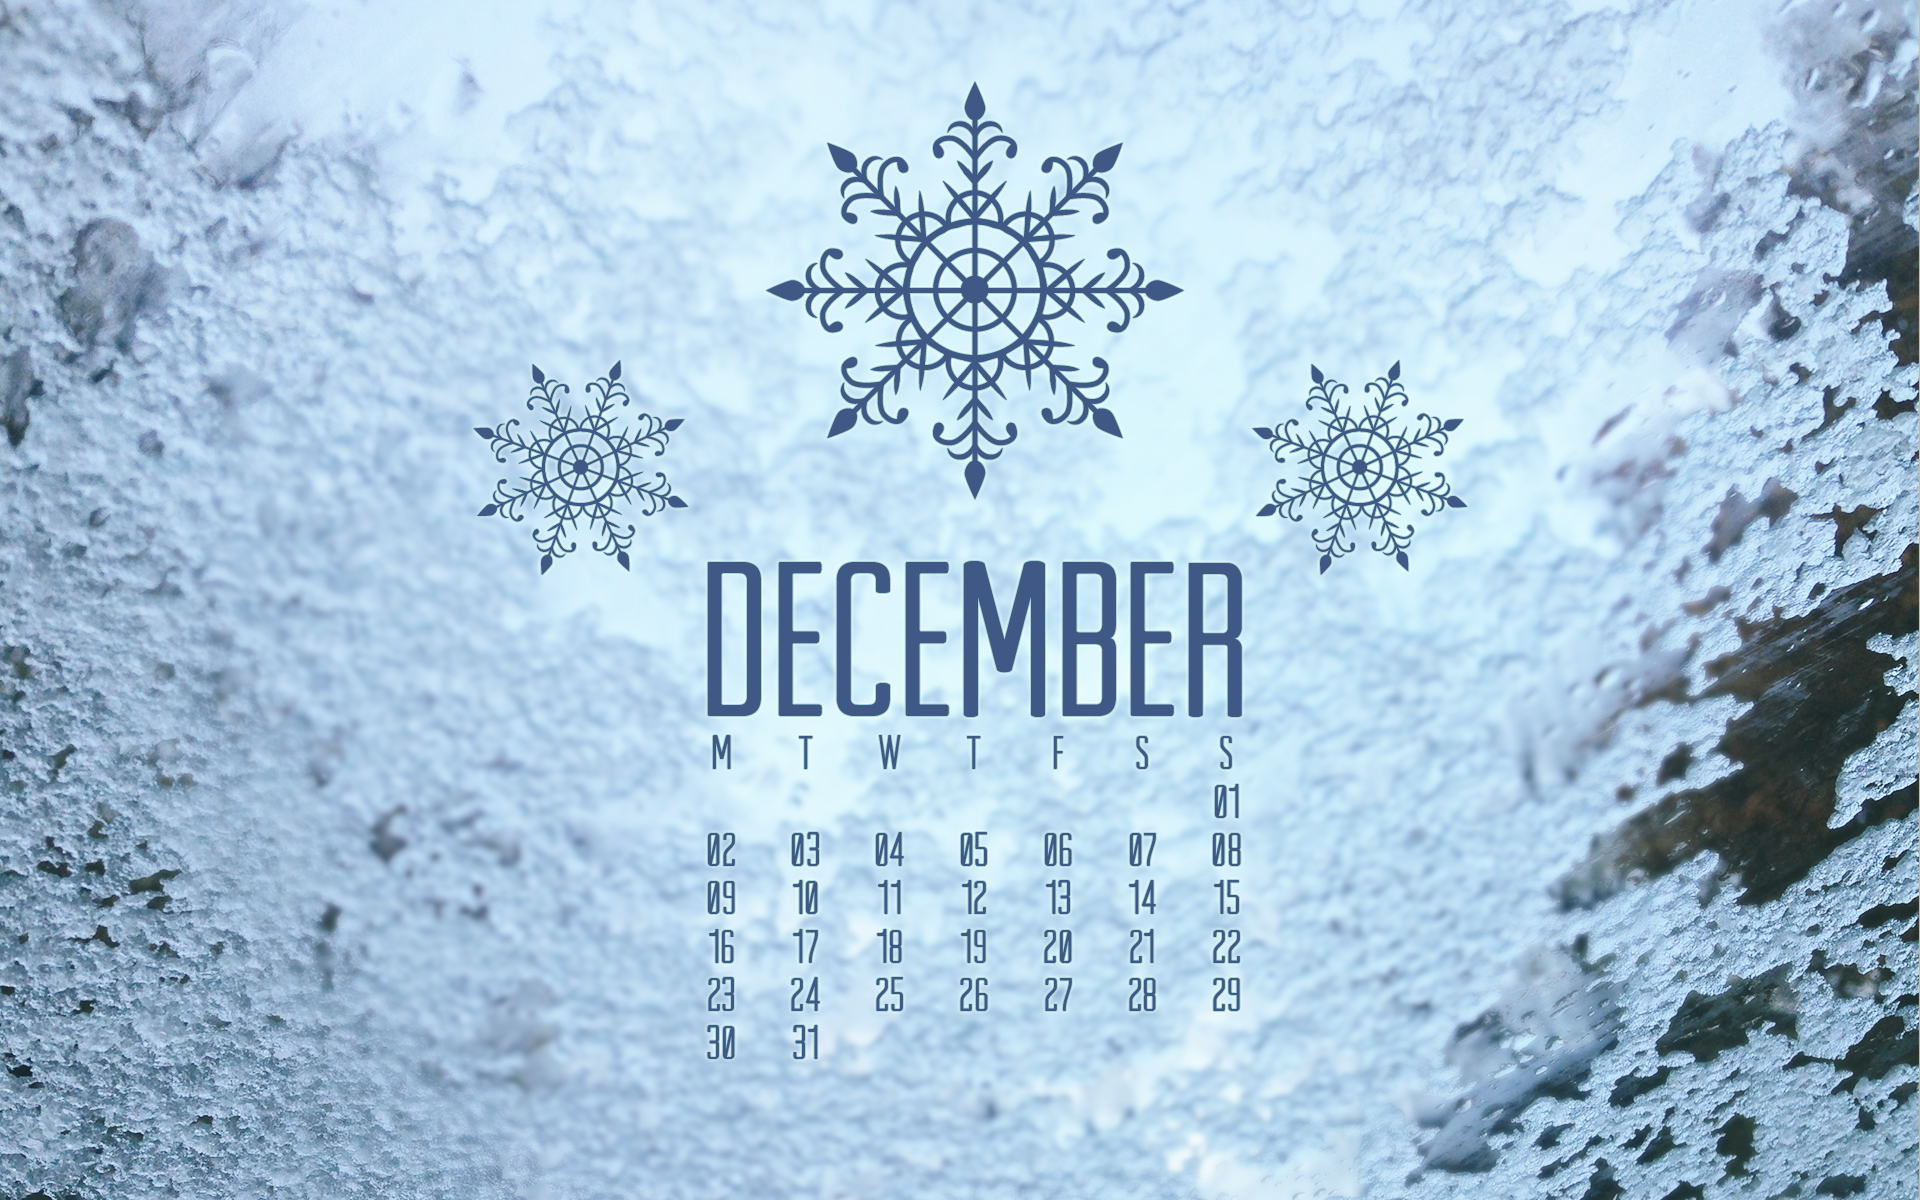 dicembre wallpaper hd,testo,font,inverno,brina,congelamento